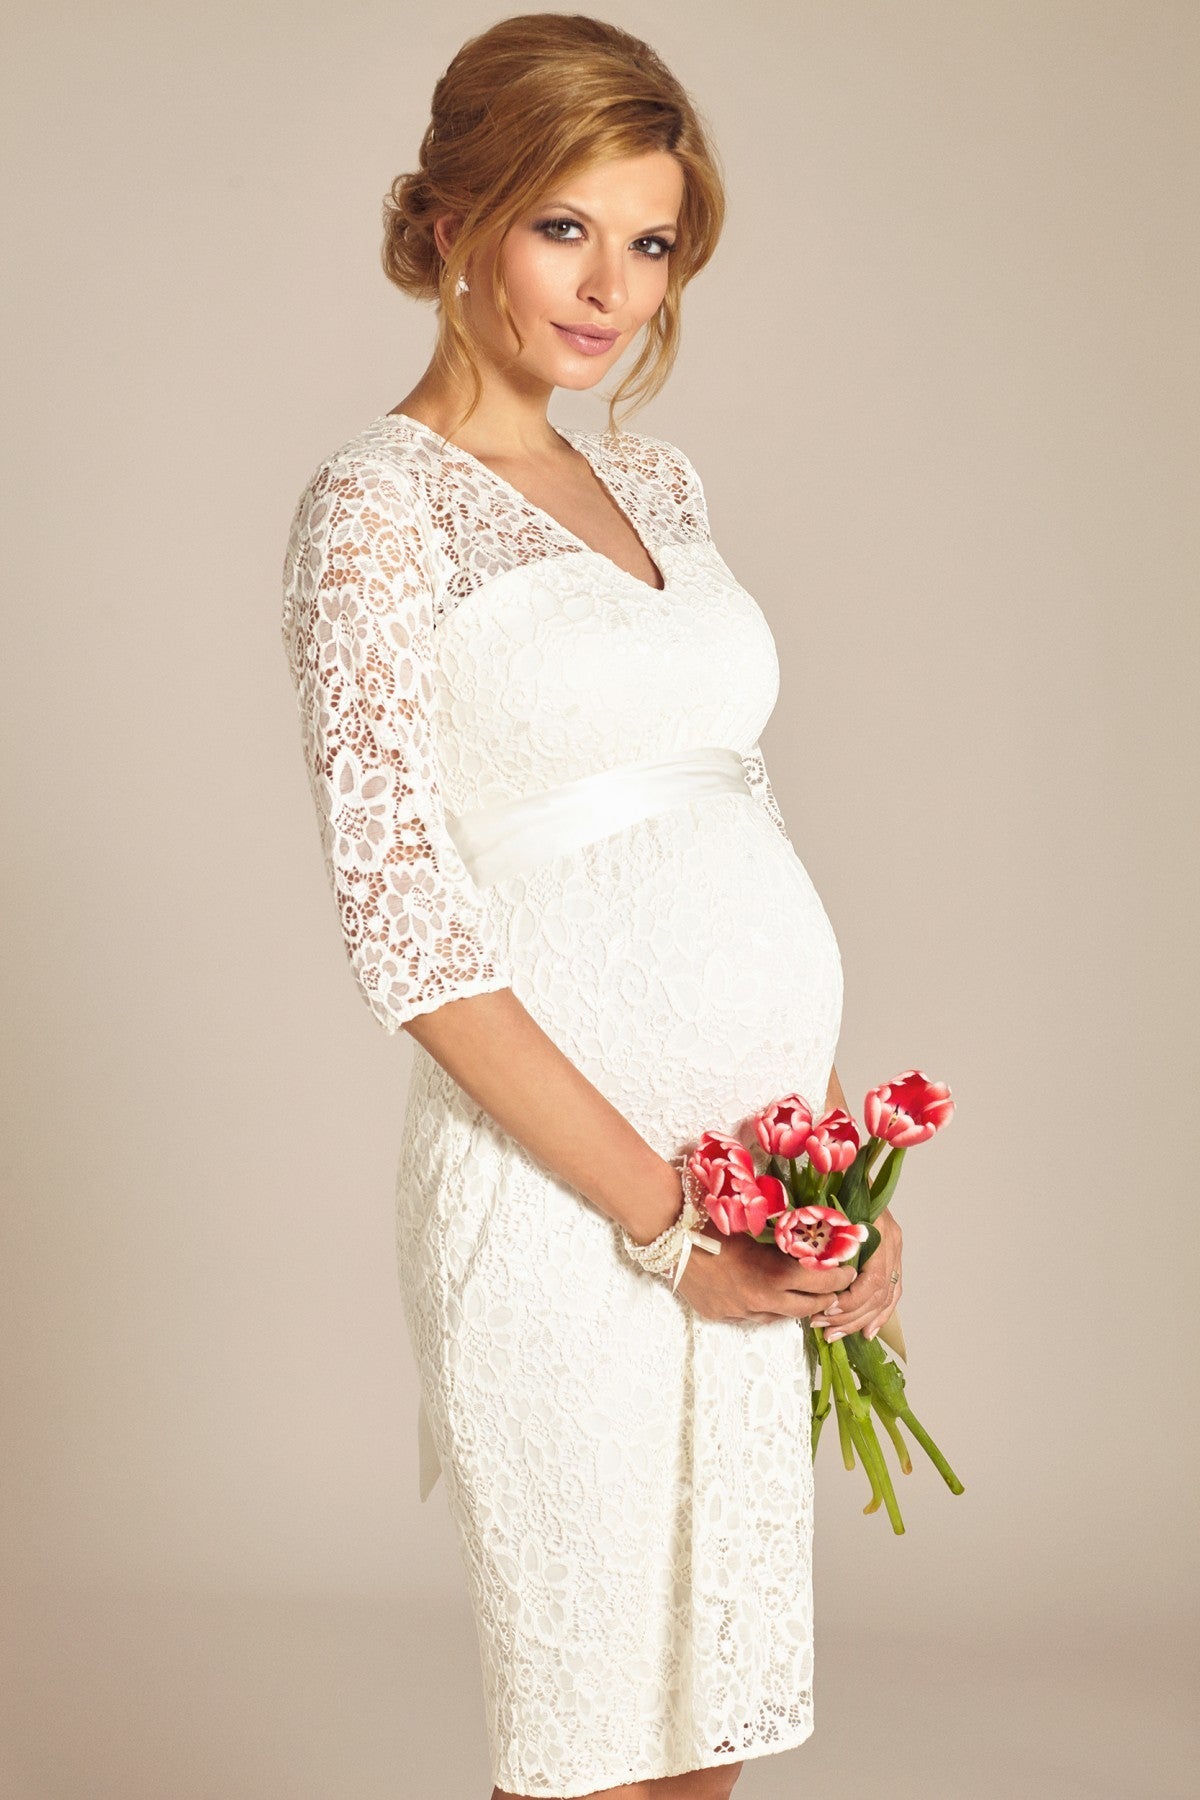 Elegant White Long Sleeve Maternity Dress for Photo Shoot - Etsy